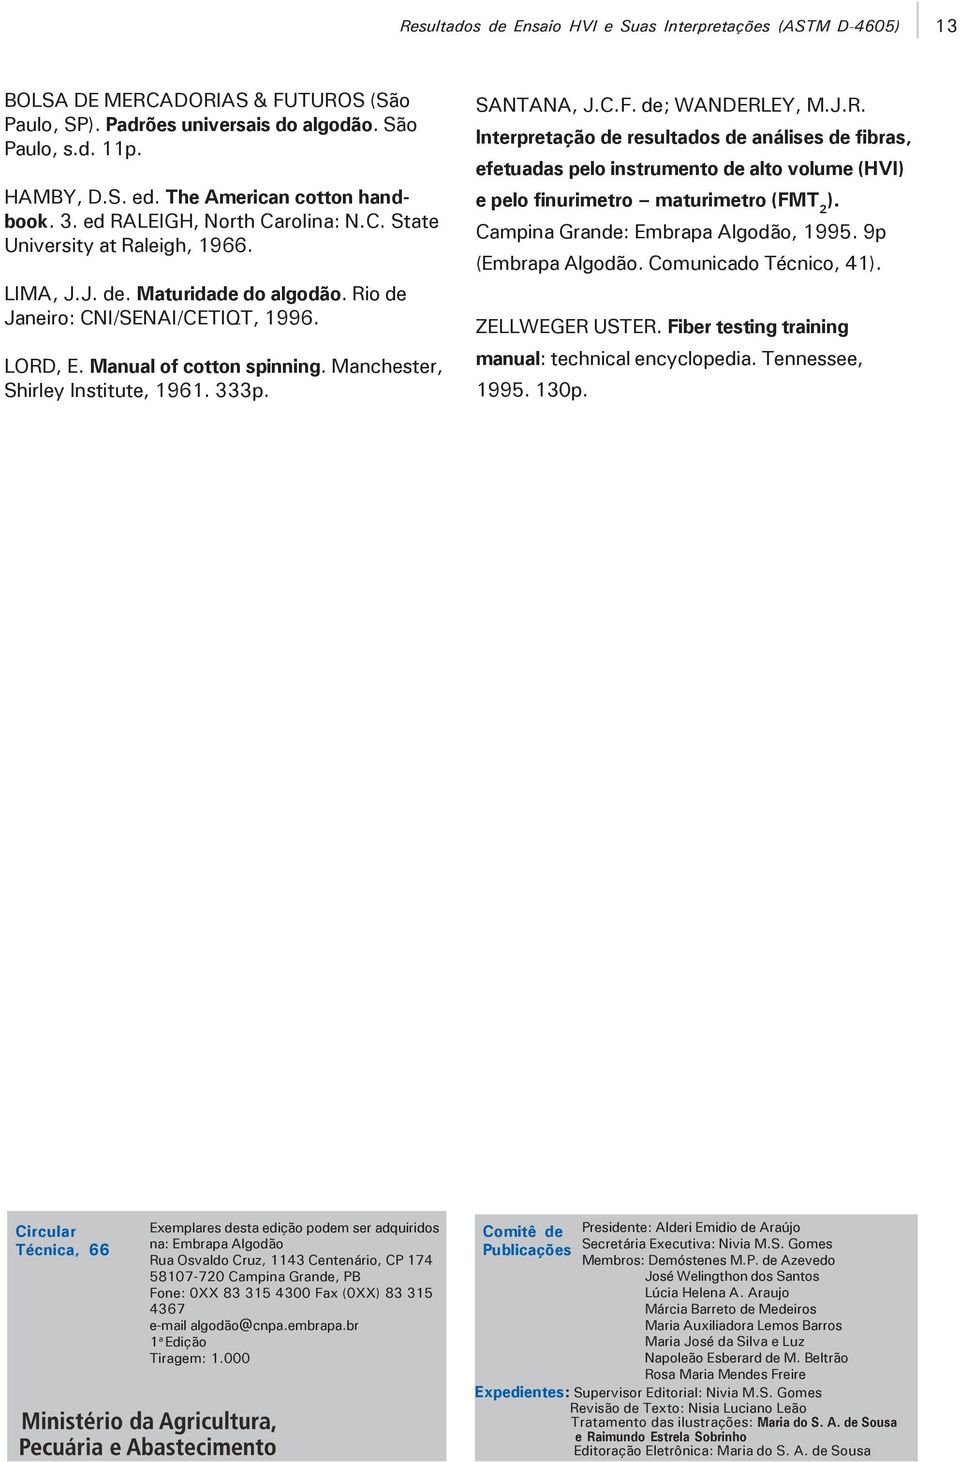 Campina Grande: Embrapa Algodão, 1995. 9p (Embrapa Algodão. Comunicado Técnico, 41). ZELLWEGER USTER. Fiber testing training manual: technical encyclopedia. Tennessee, 1995. 130p.